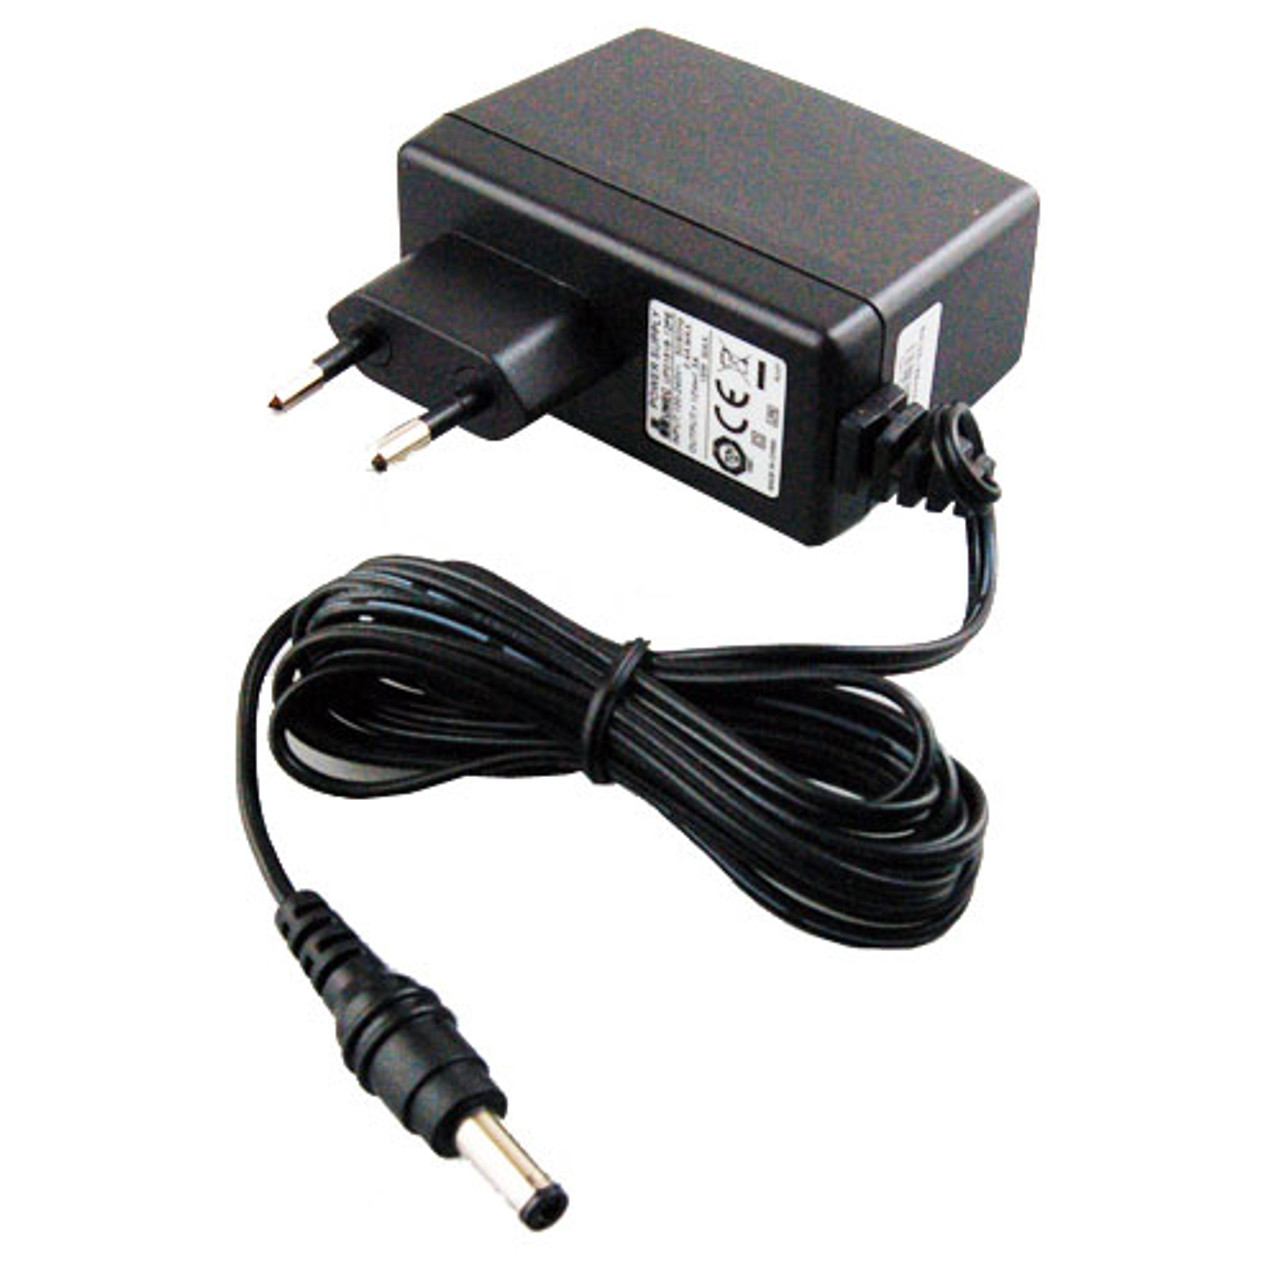 ACEU-12V - AC 90-240V input power adapter for FRM220, FIB1 and FMC series  converters, EU 220V round pins